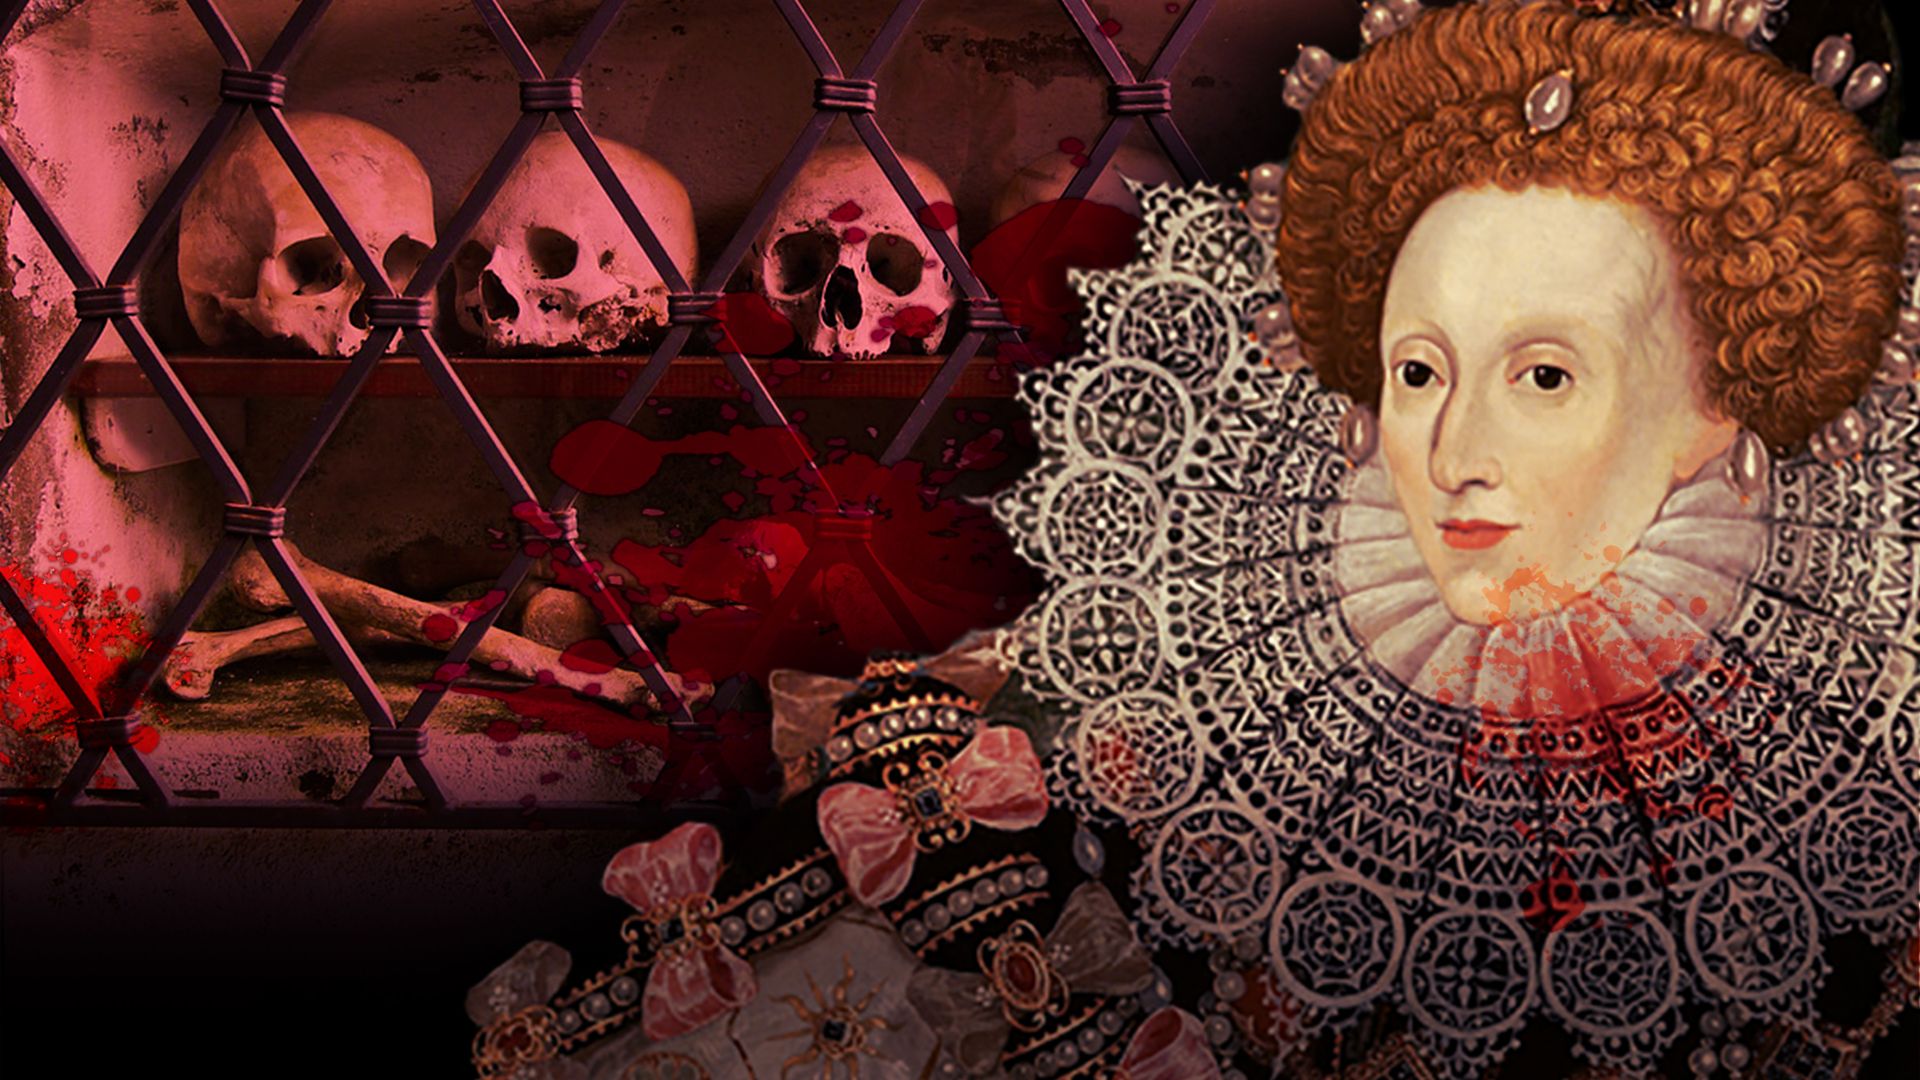 Elizabeth I: Killer Queen